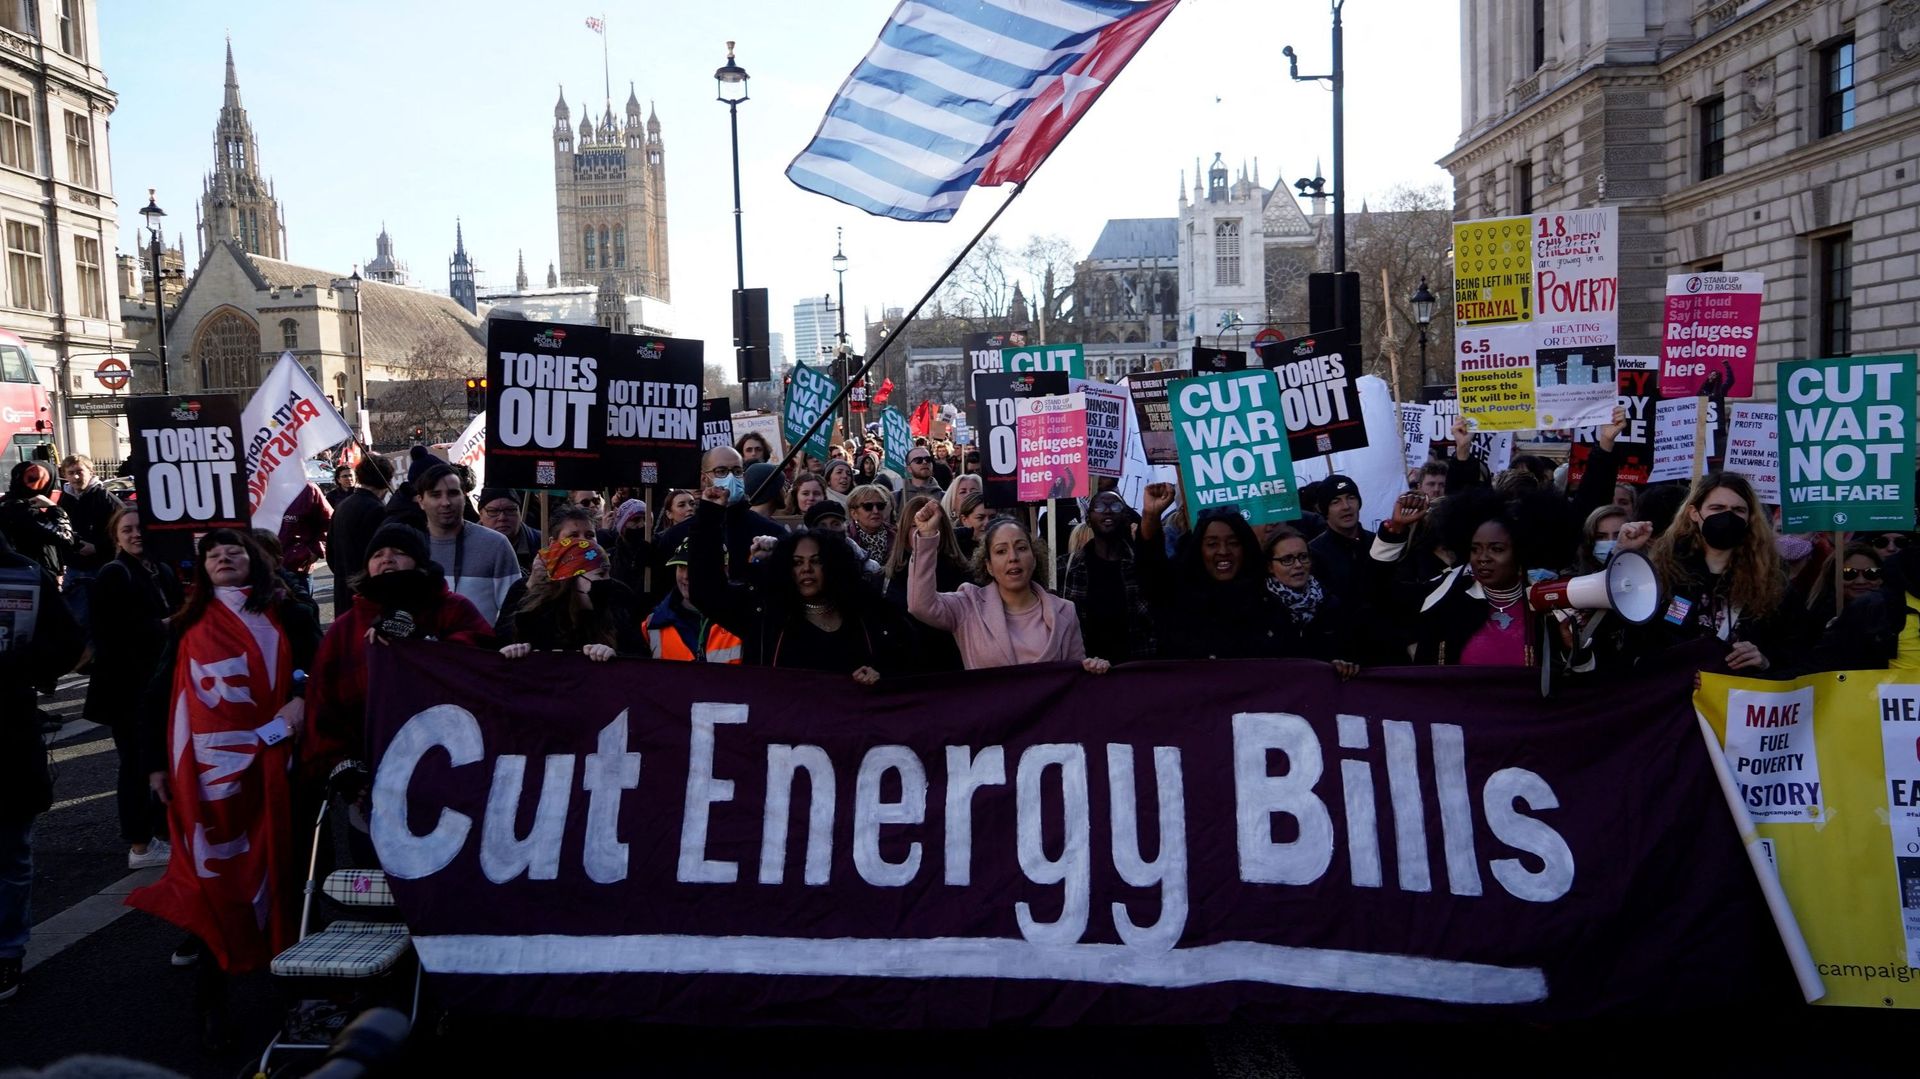 Des marches sont prévues dans plusieurs villes britanniques pour attirer l’attention sur la crise du coût de la vie, l’augmentation des factures d’énergie exerçant une forte pression financière sur de nombreuses personnes à travers le pays.